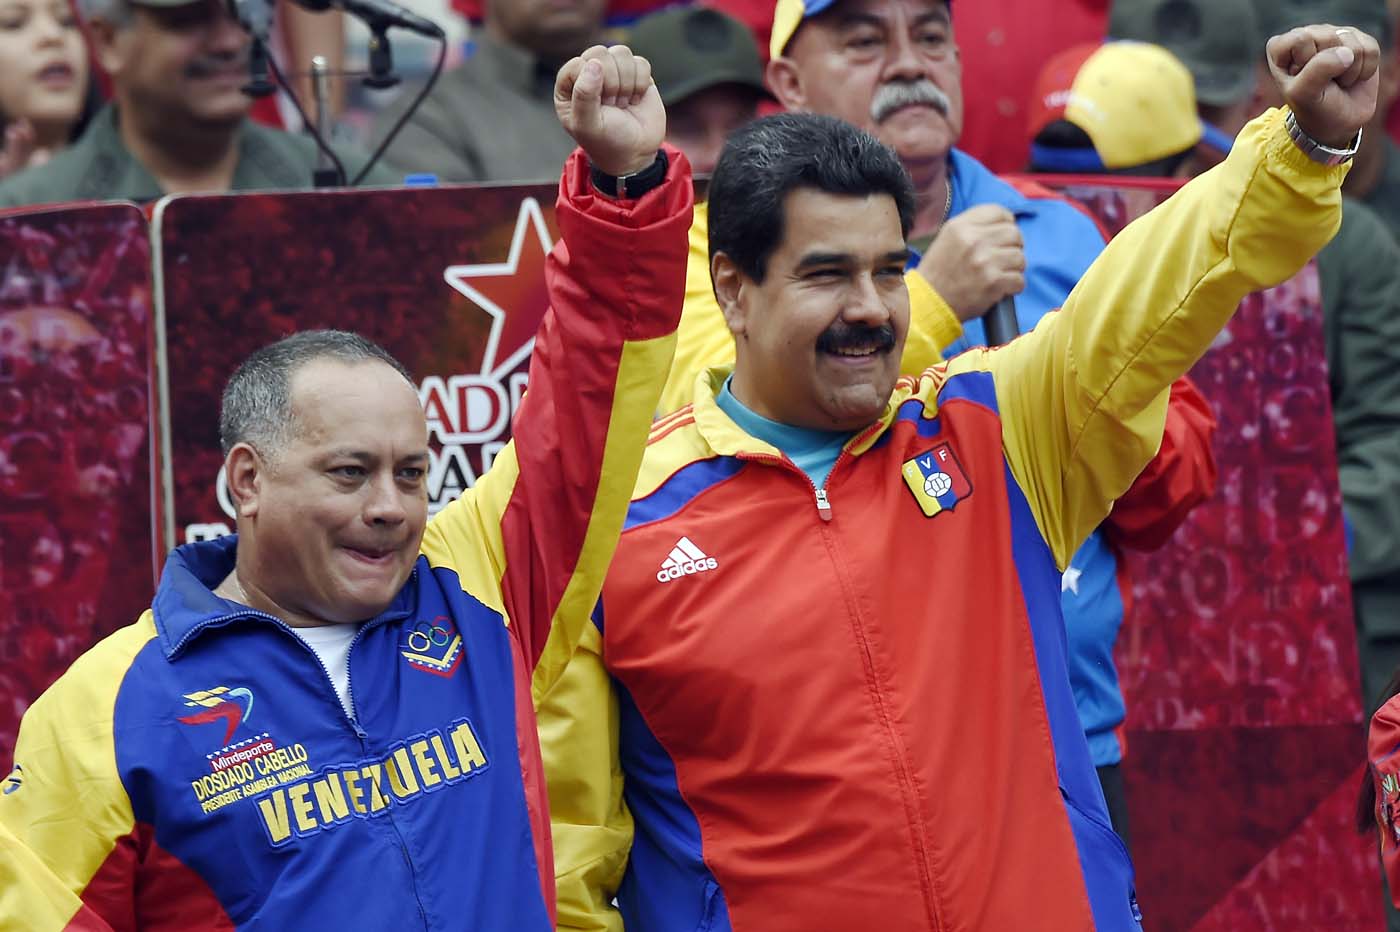 Nicolás Maduro y Diosdado Cabello denunciados por Rebelión Civil